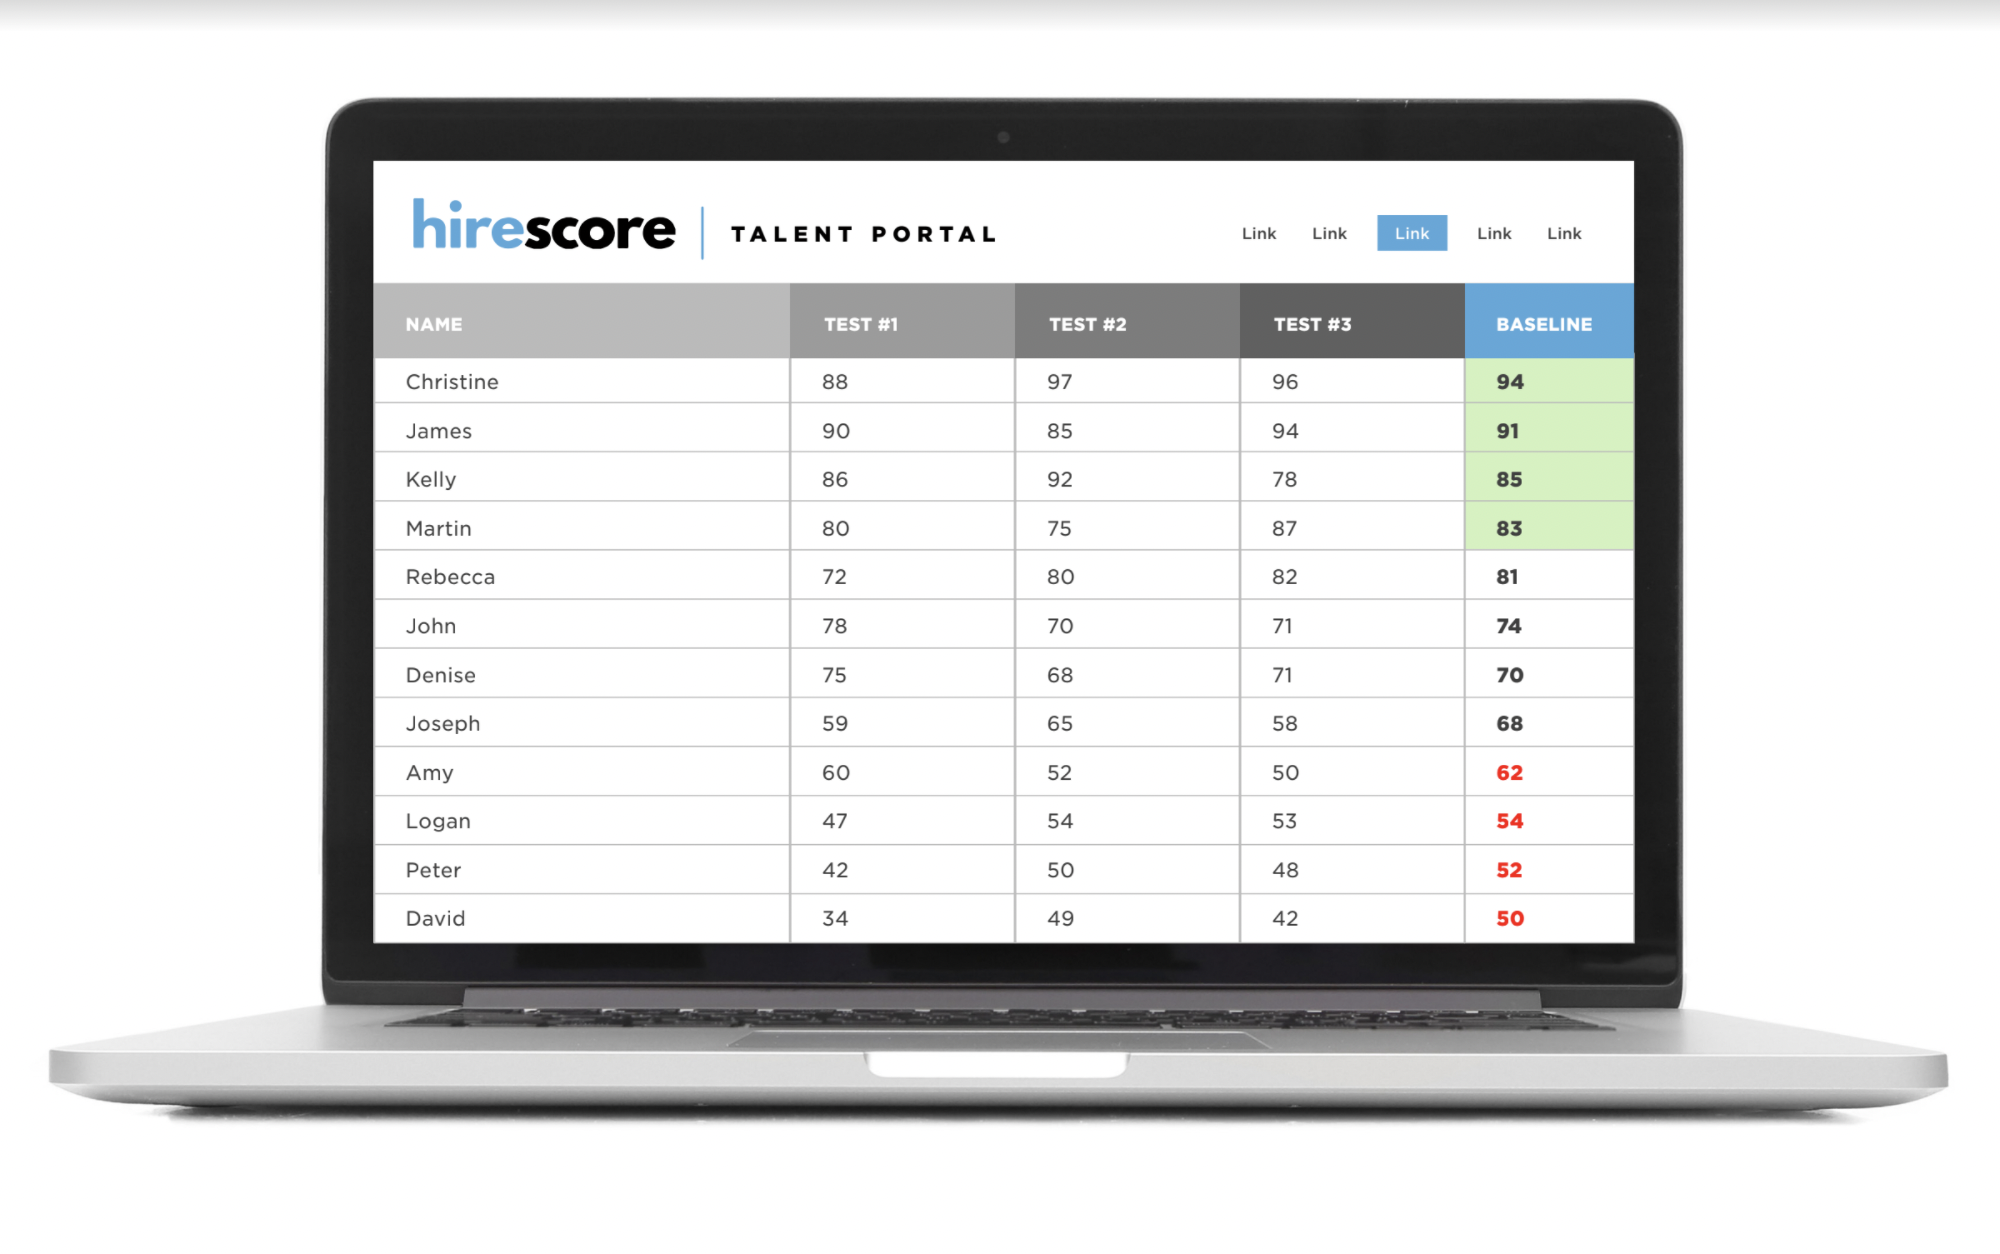 HireScore talent portal